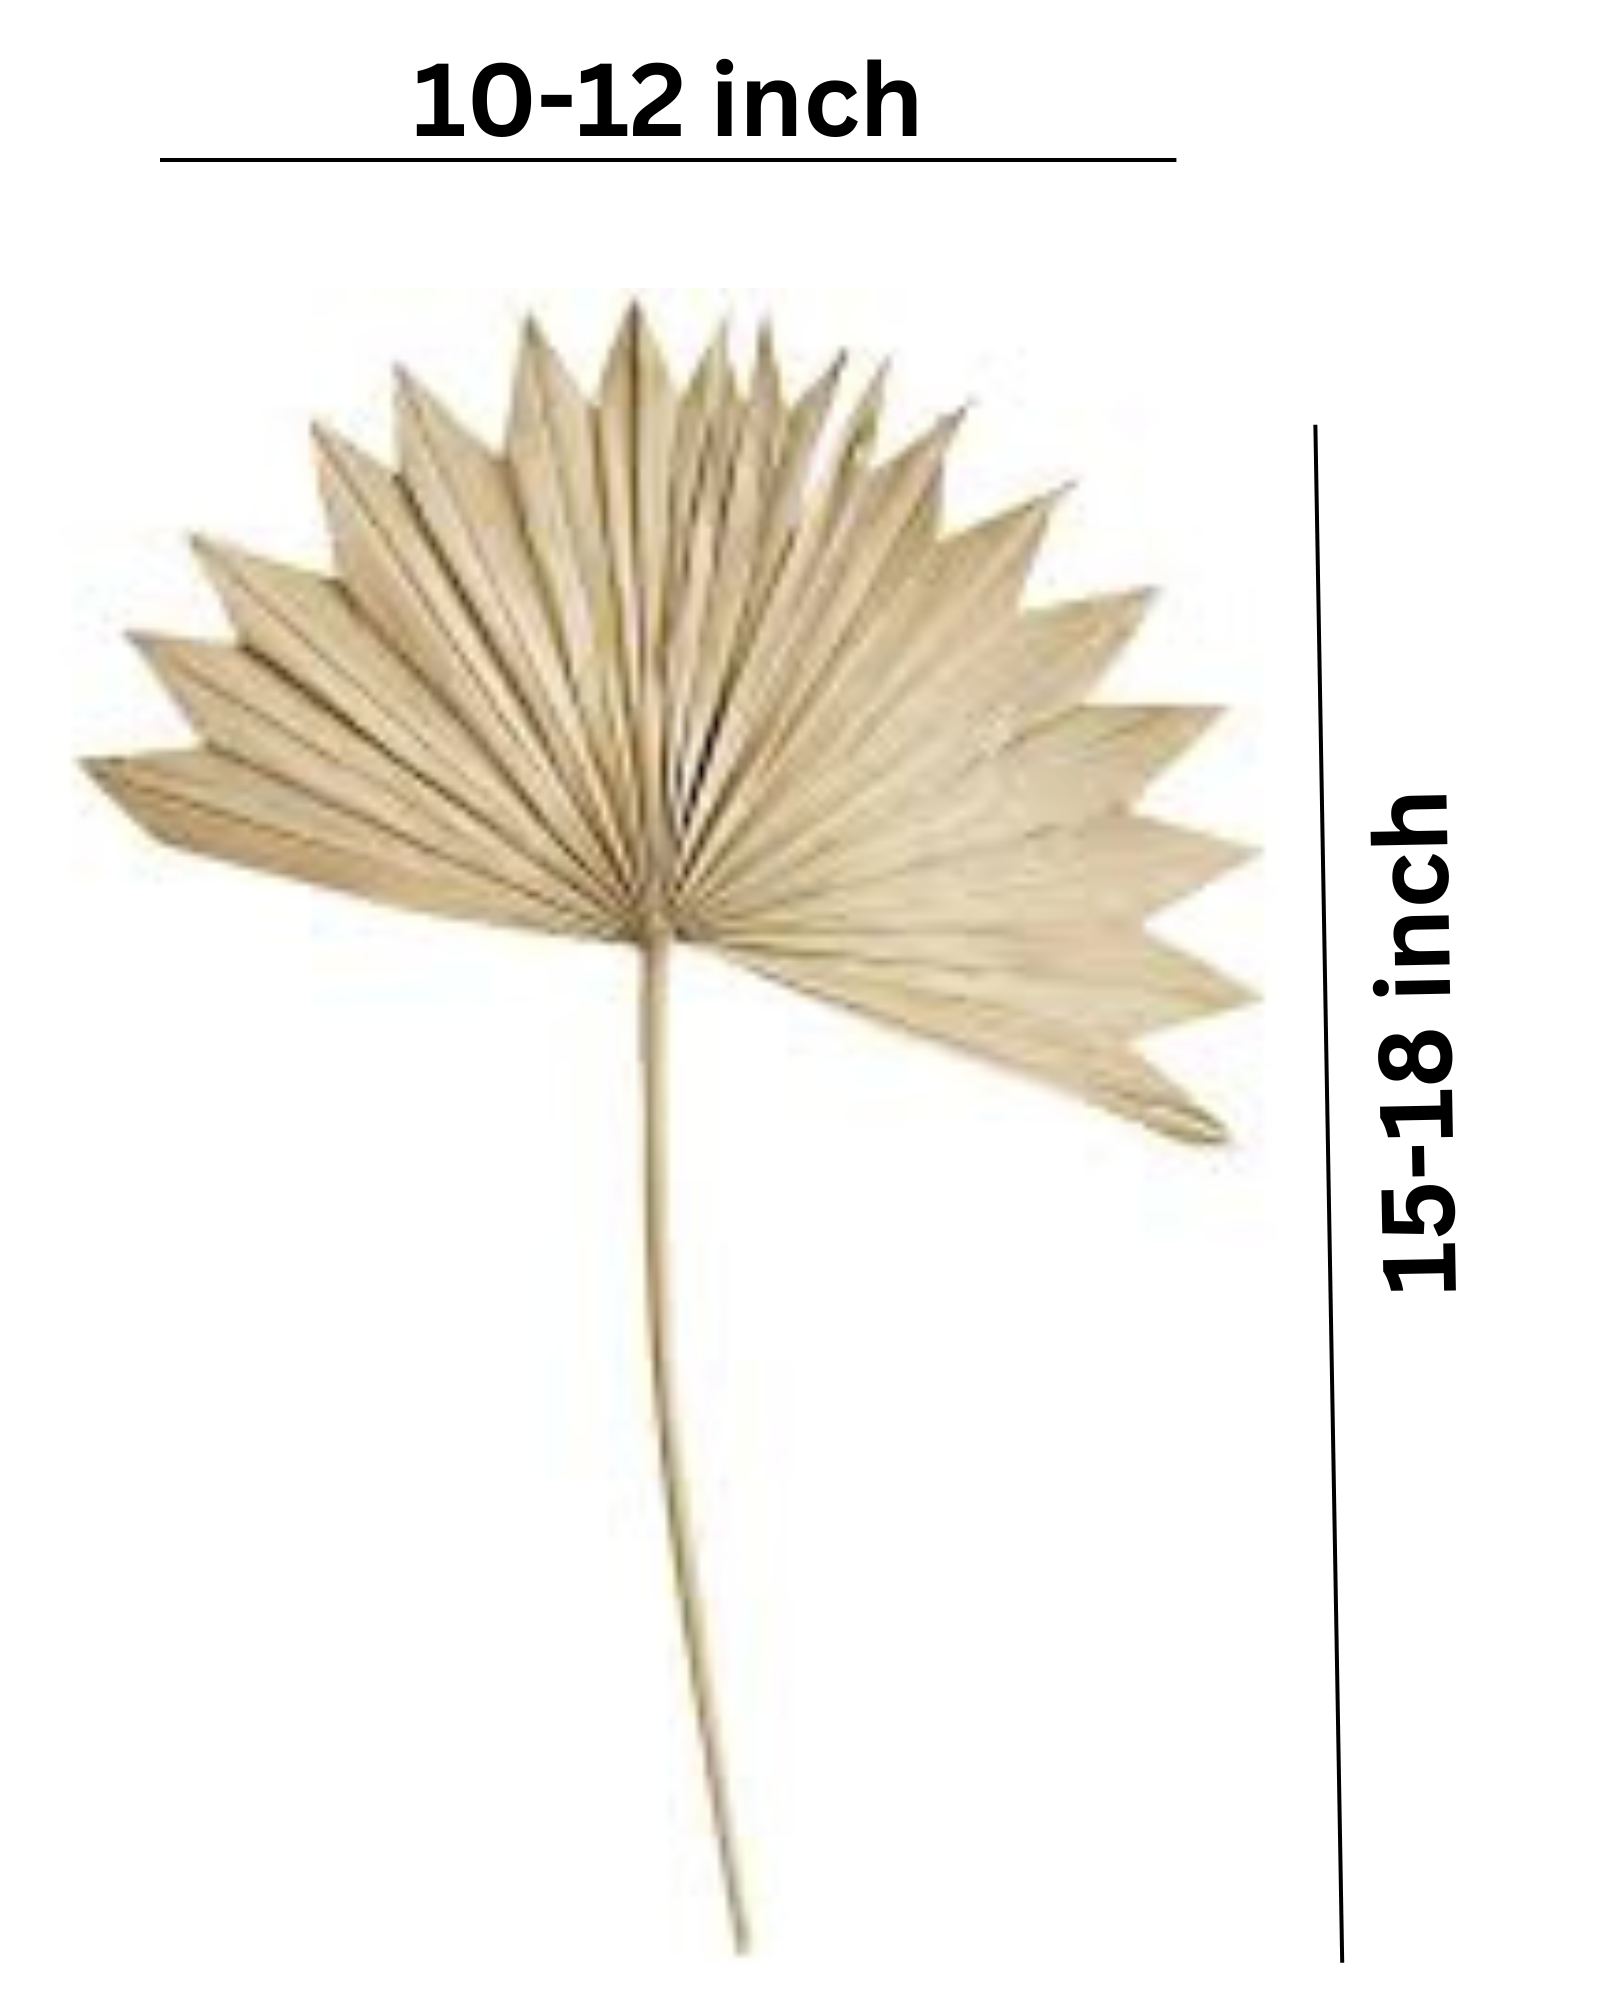 Dried Natural Palm Leaf Sun Spear